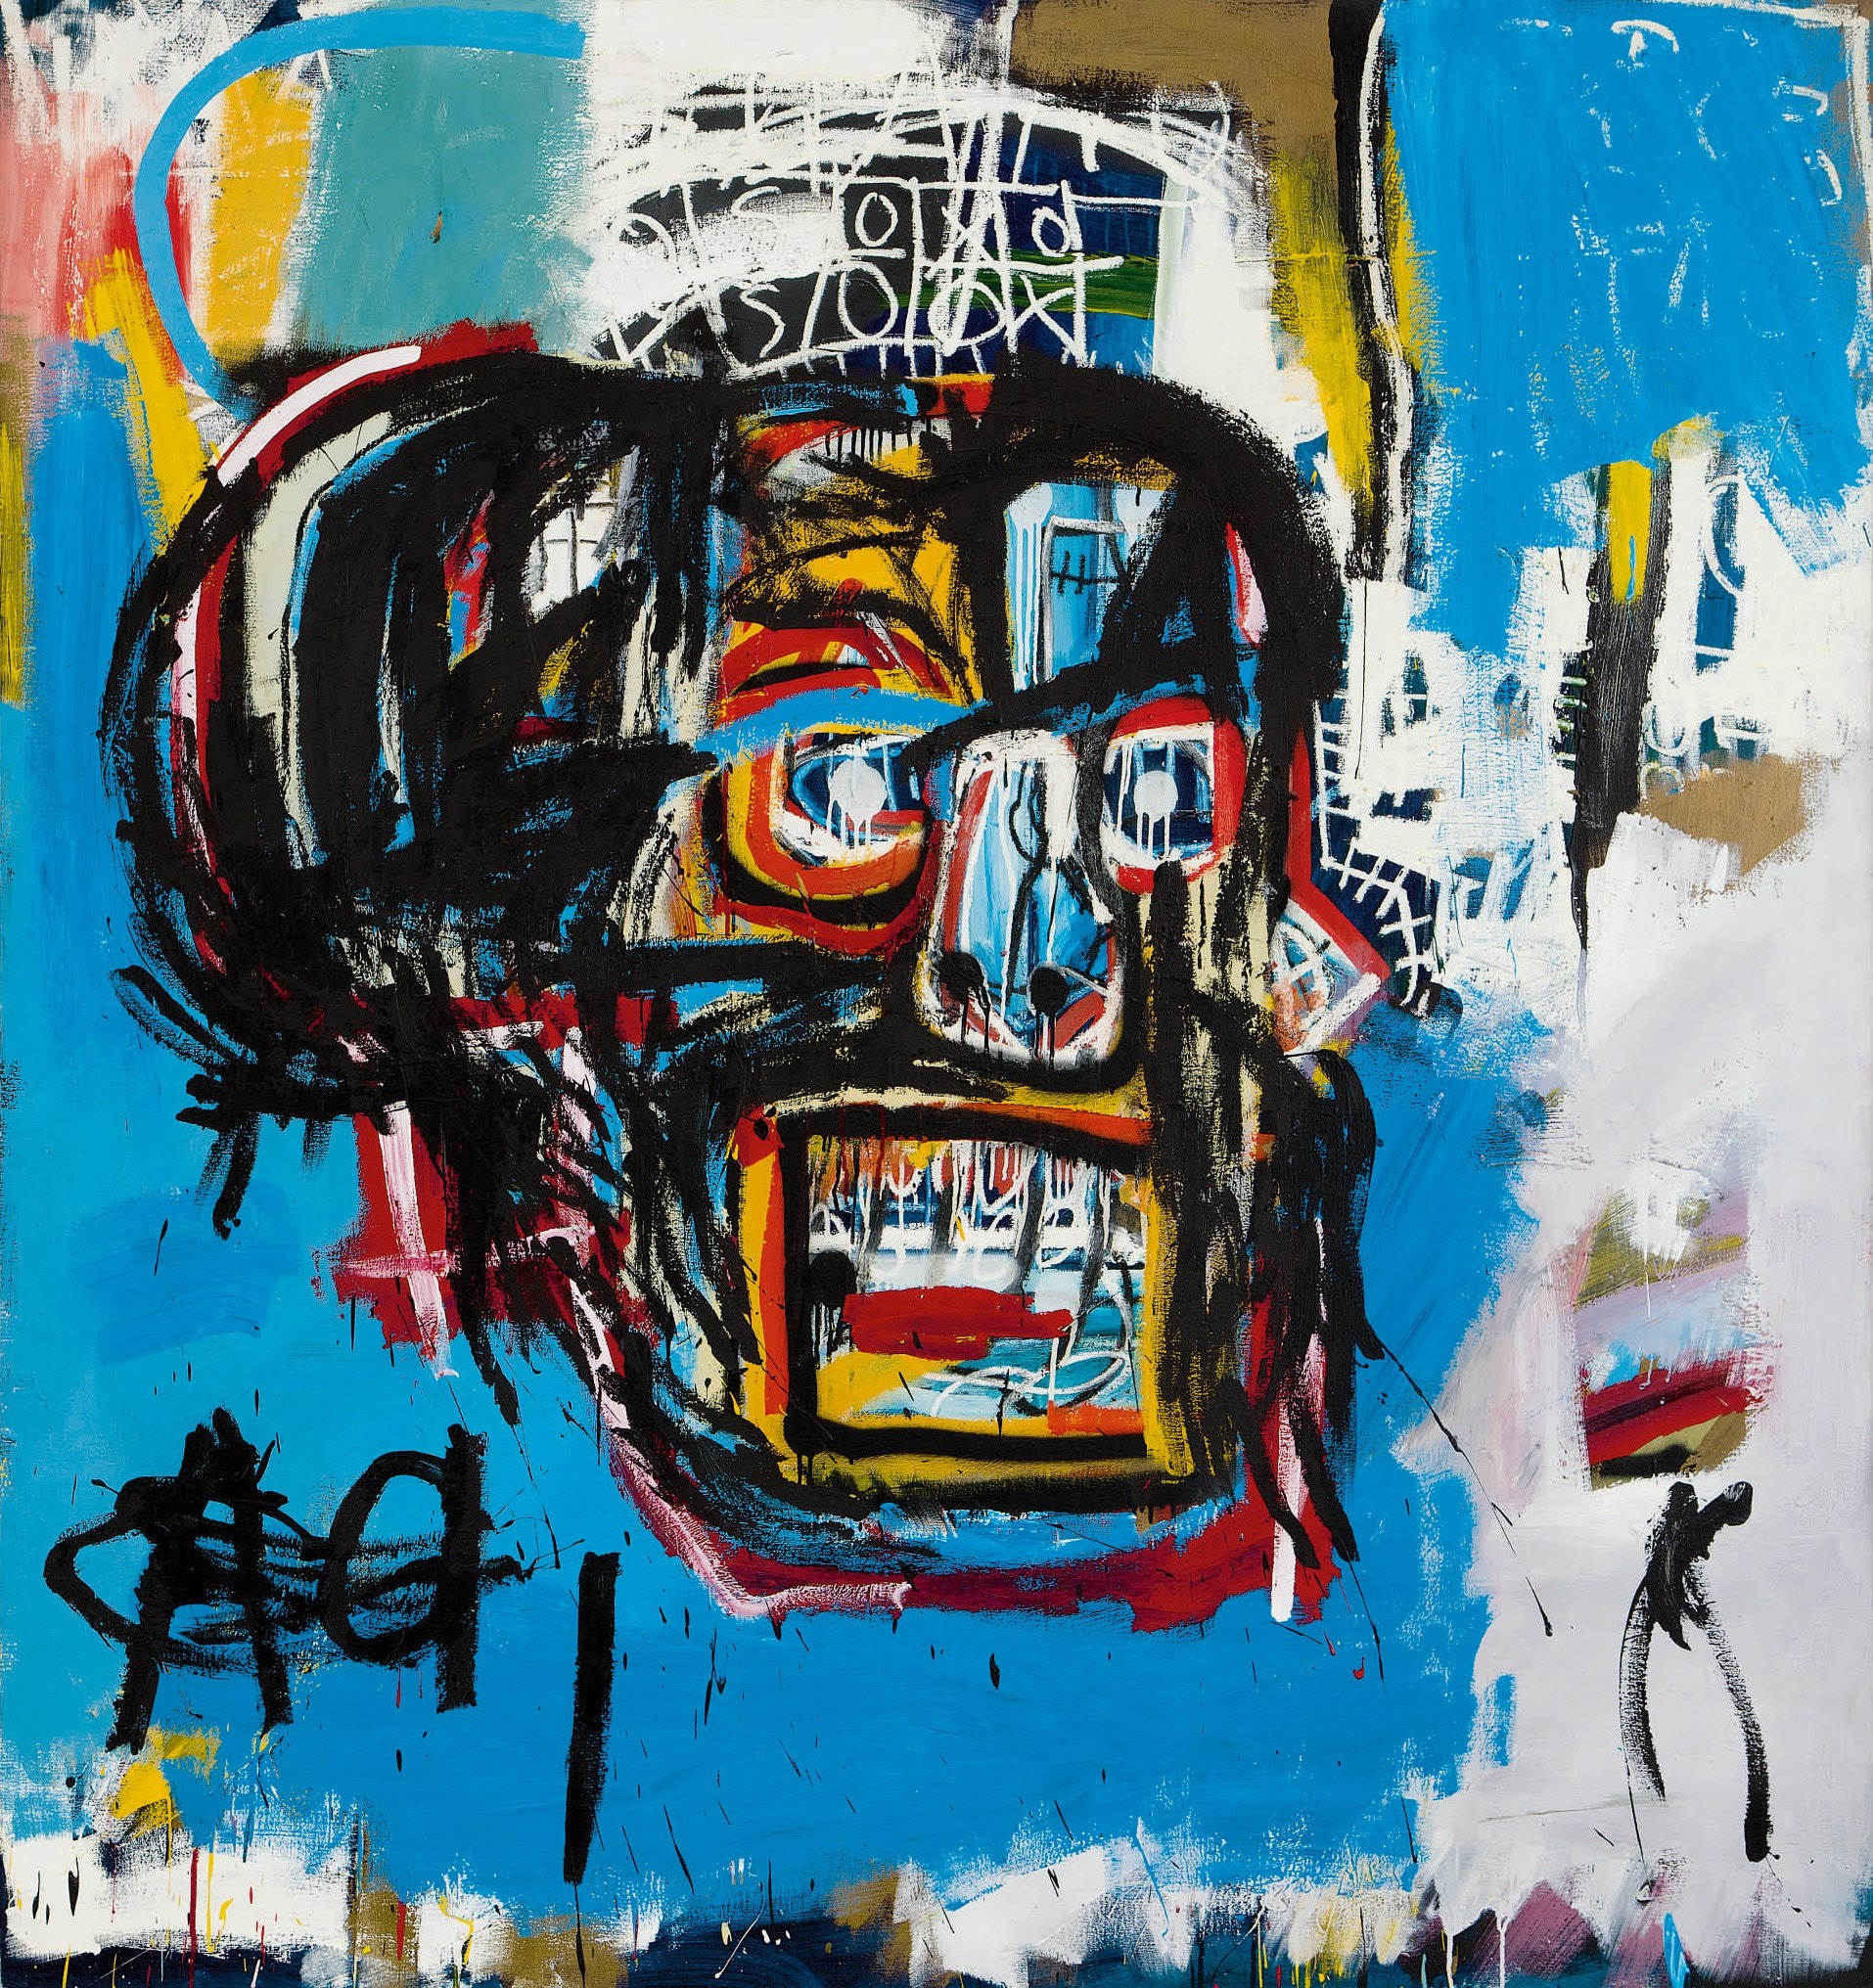 Schilderij van Basquiat brengt recordbedrag van 99,5 miljoen euro op